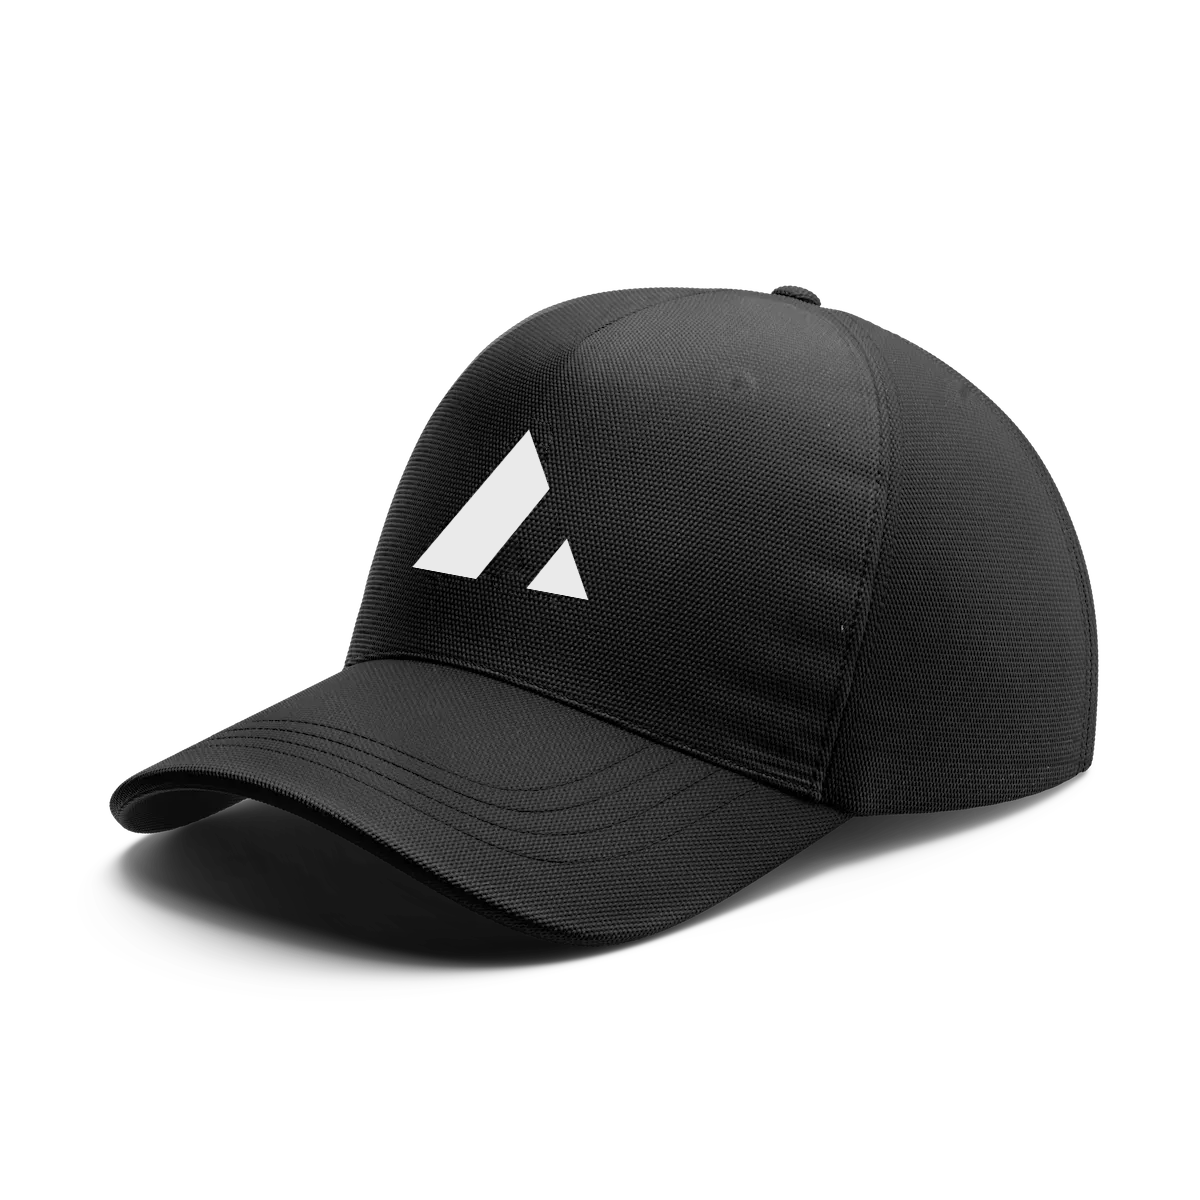 Acme Cap - hat-1